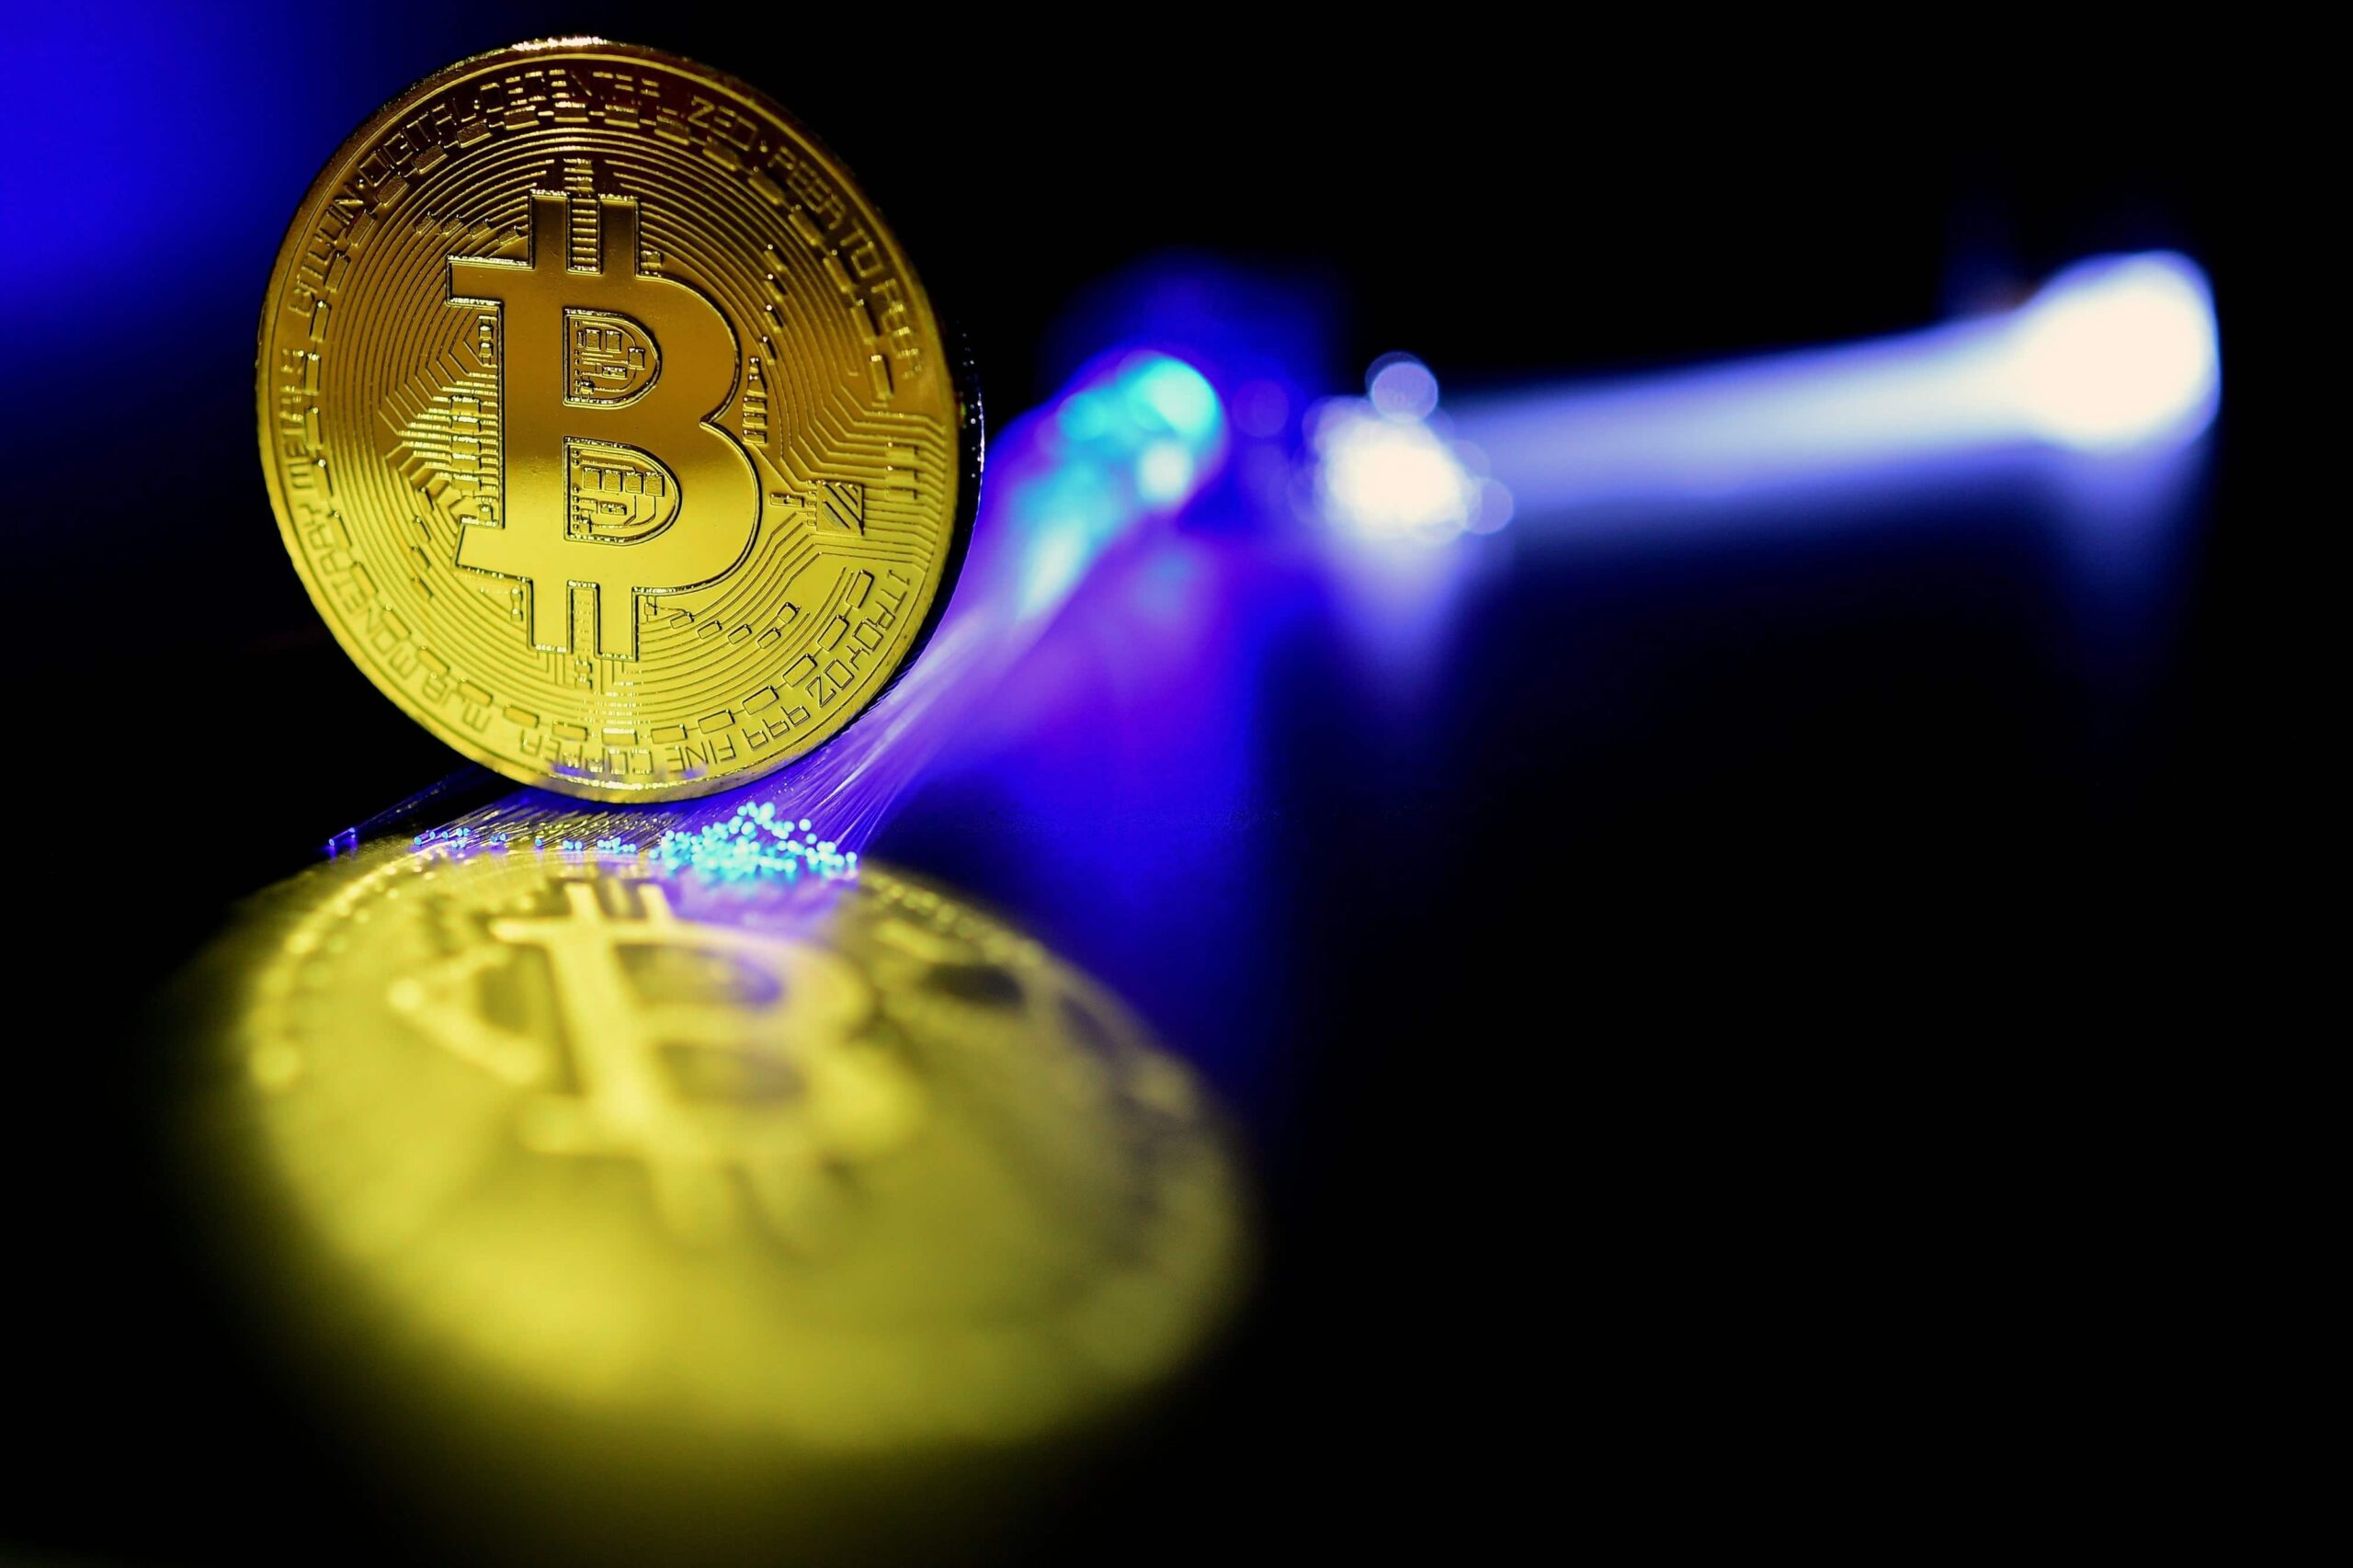 Decollo dei Bitcoin, la moneta segna un rialzo del 270%